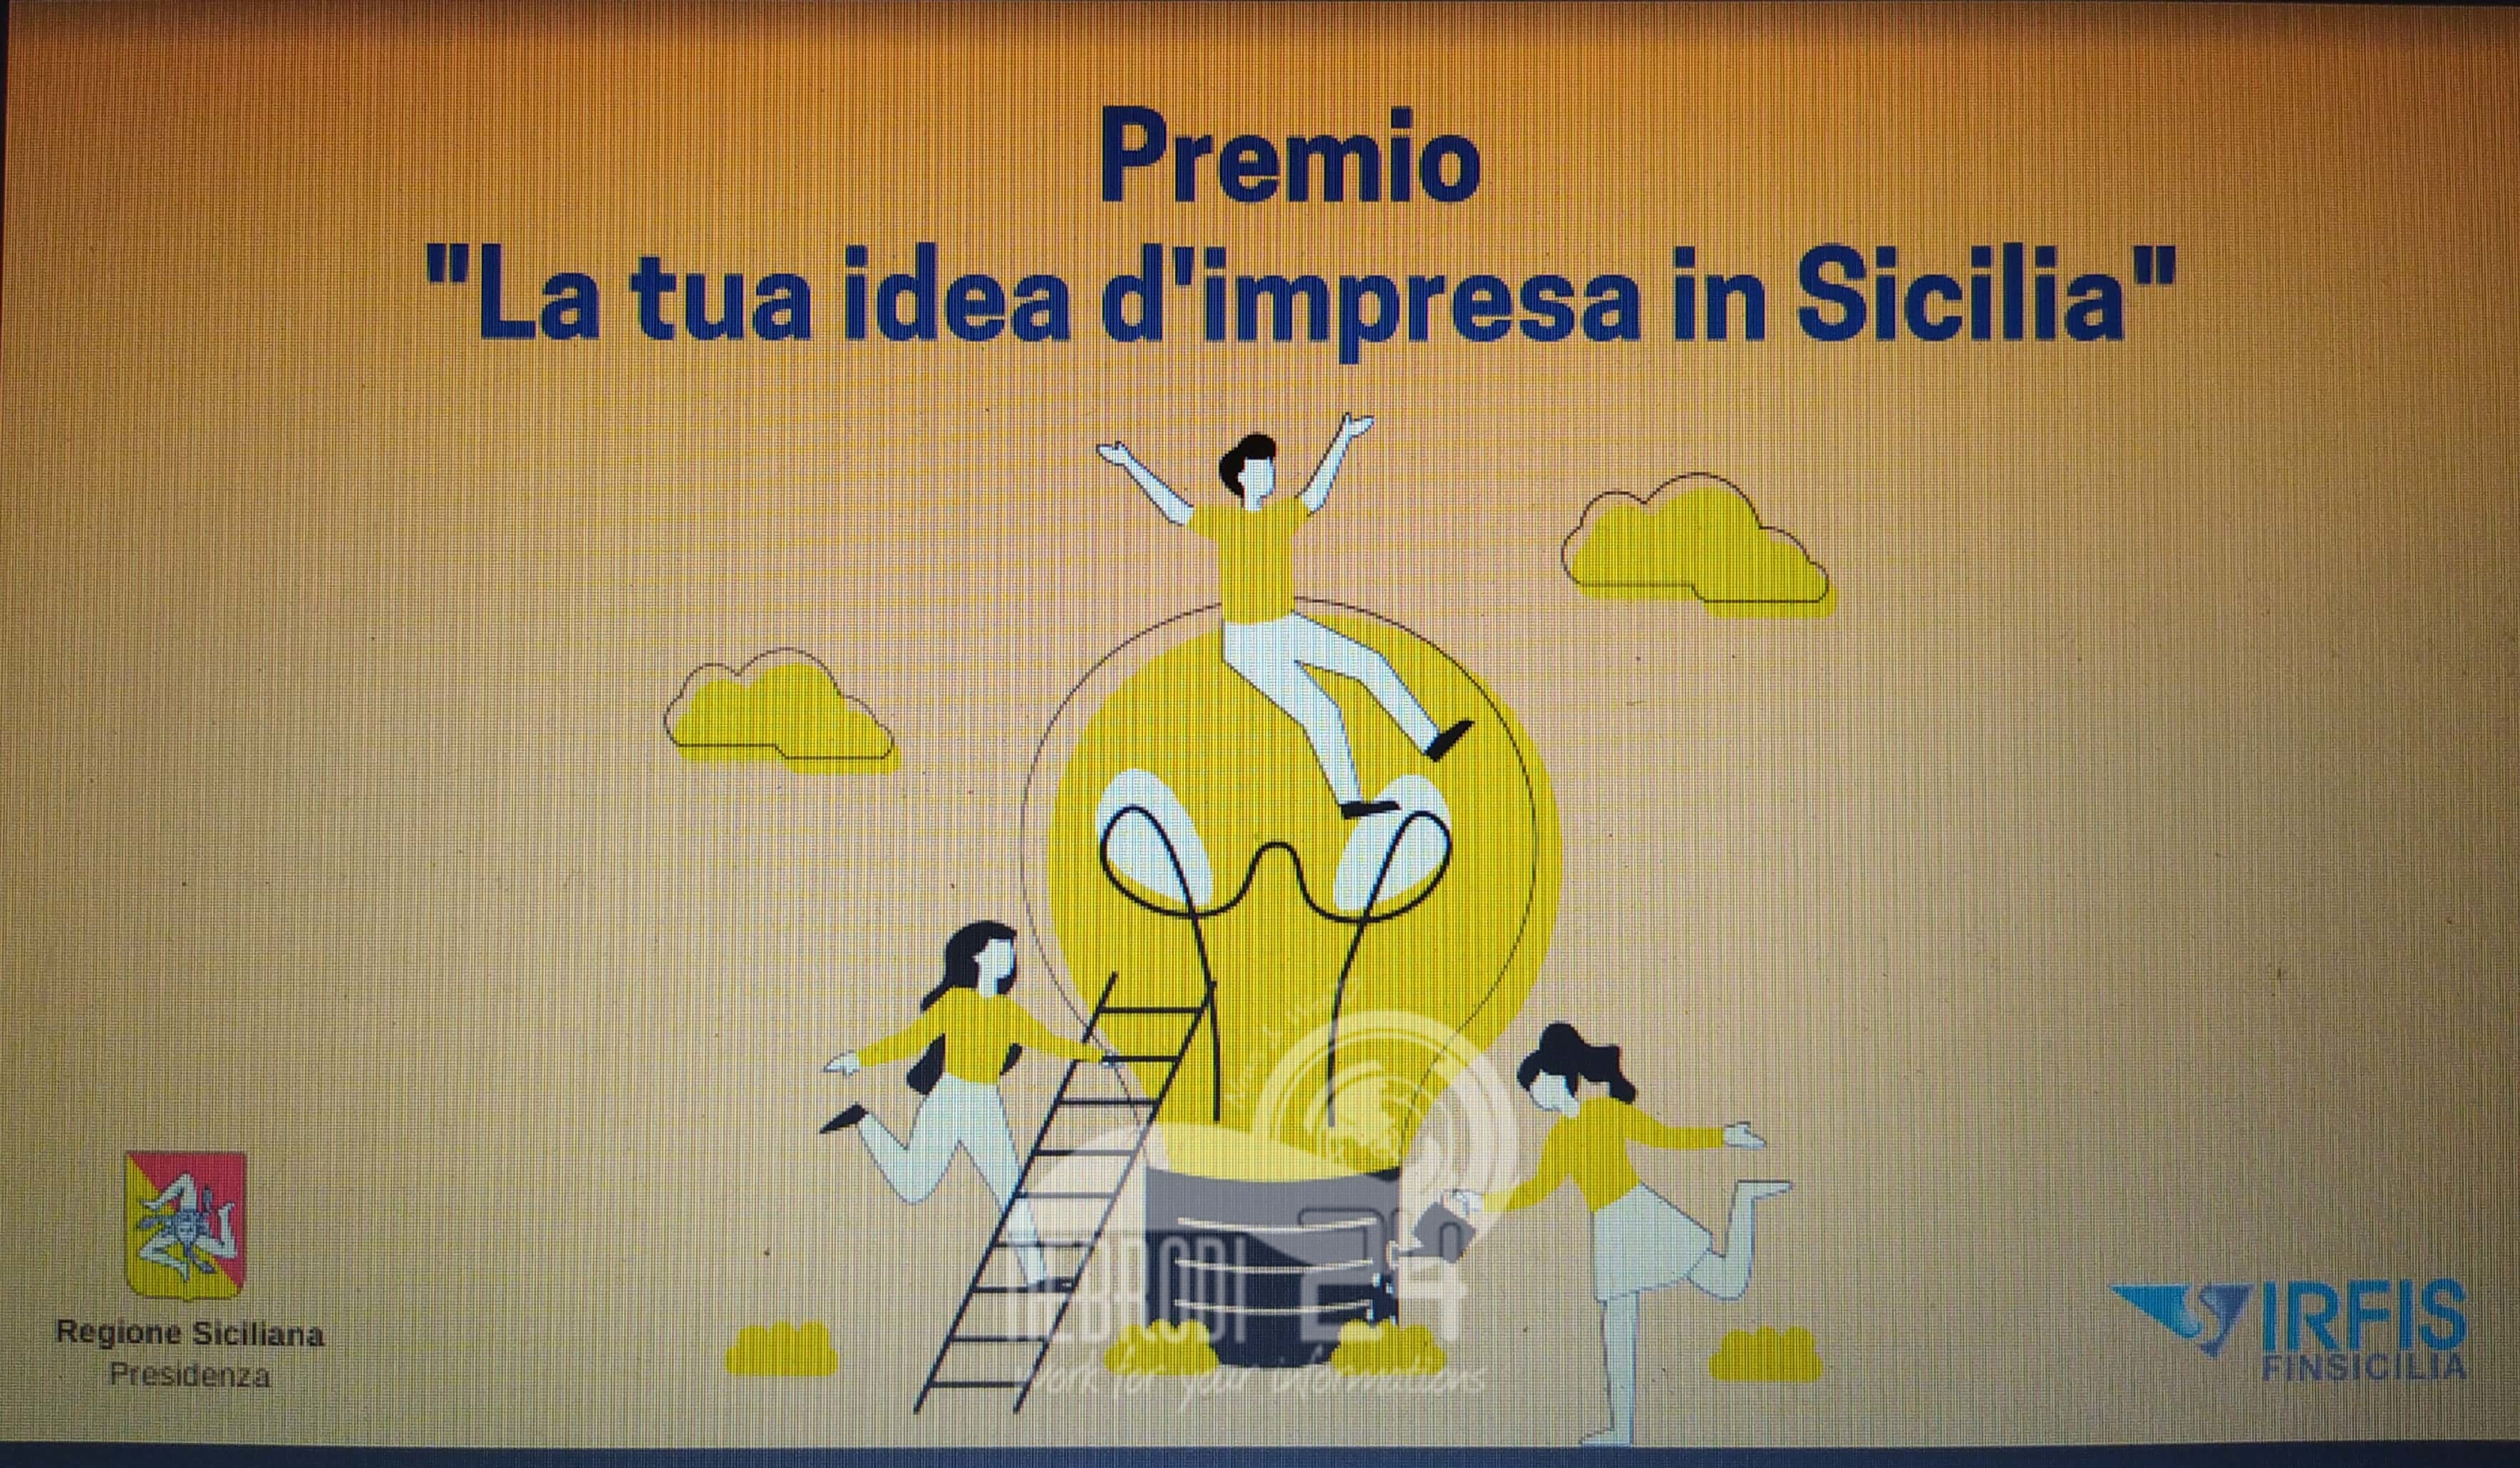 Startup, Presidenza della Regione Siciliana e Irfis finanziano giovani con nuove idee d’impresa